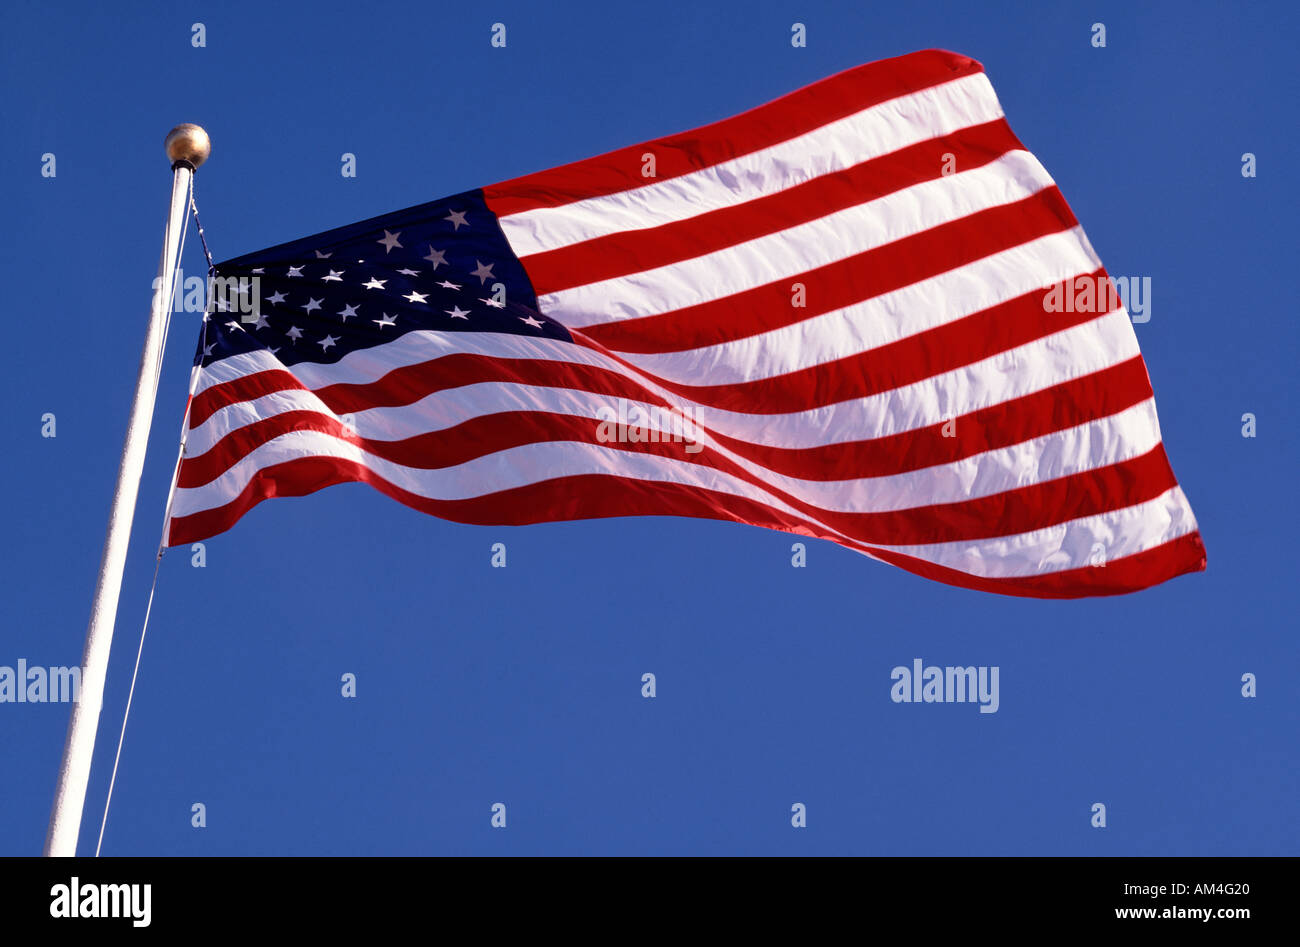 American flag, USA Stock Photo